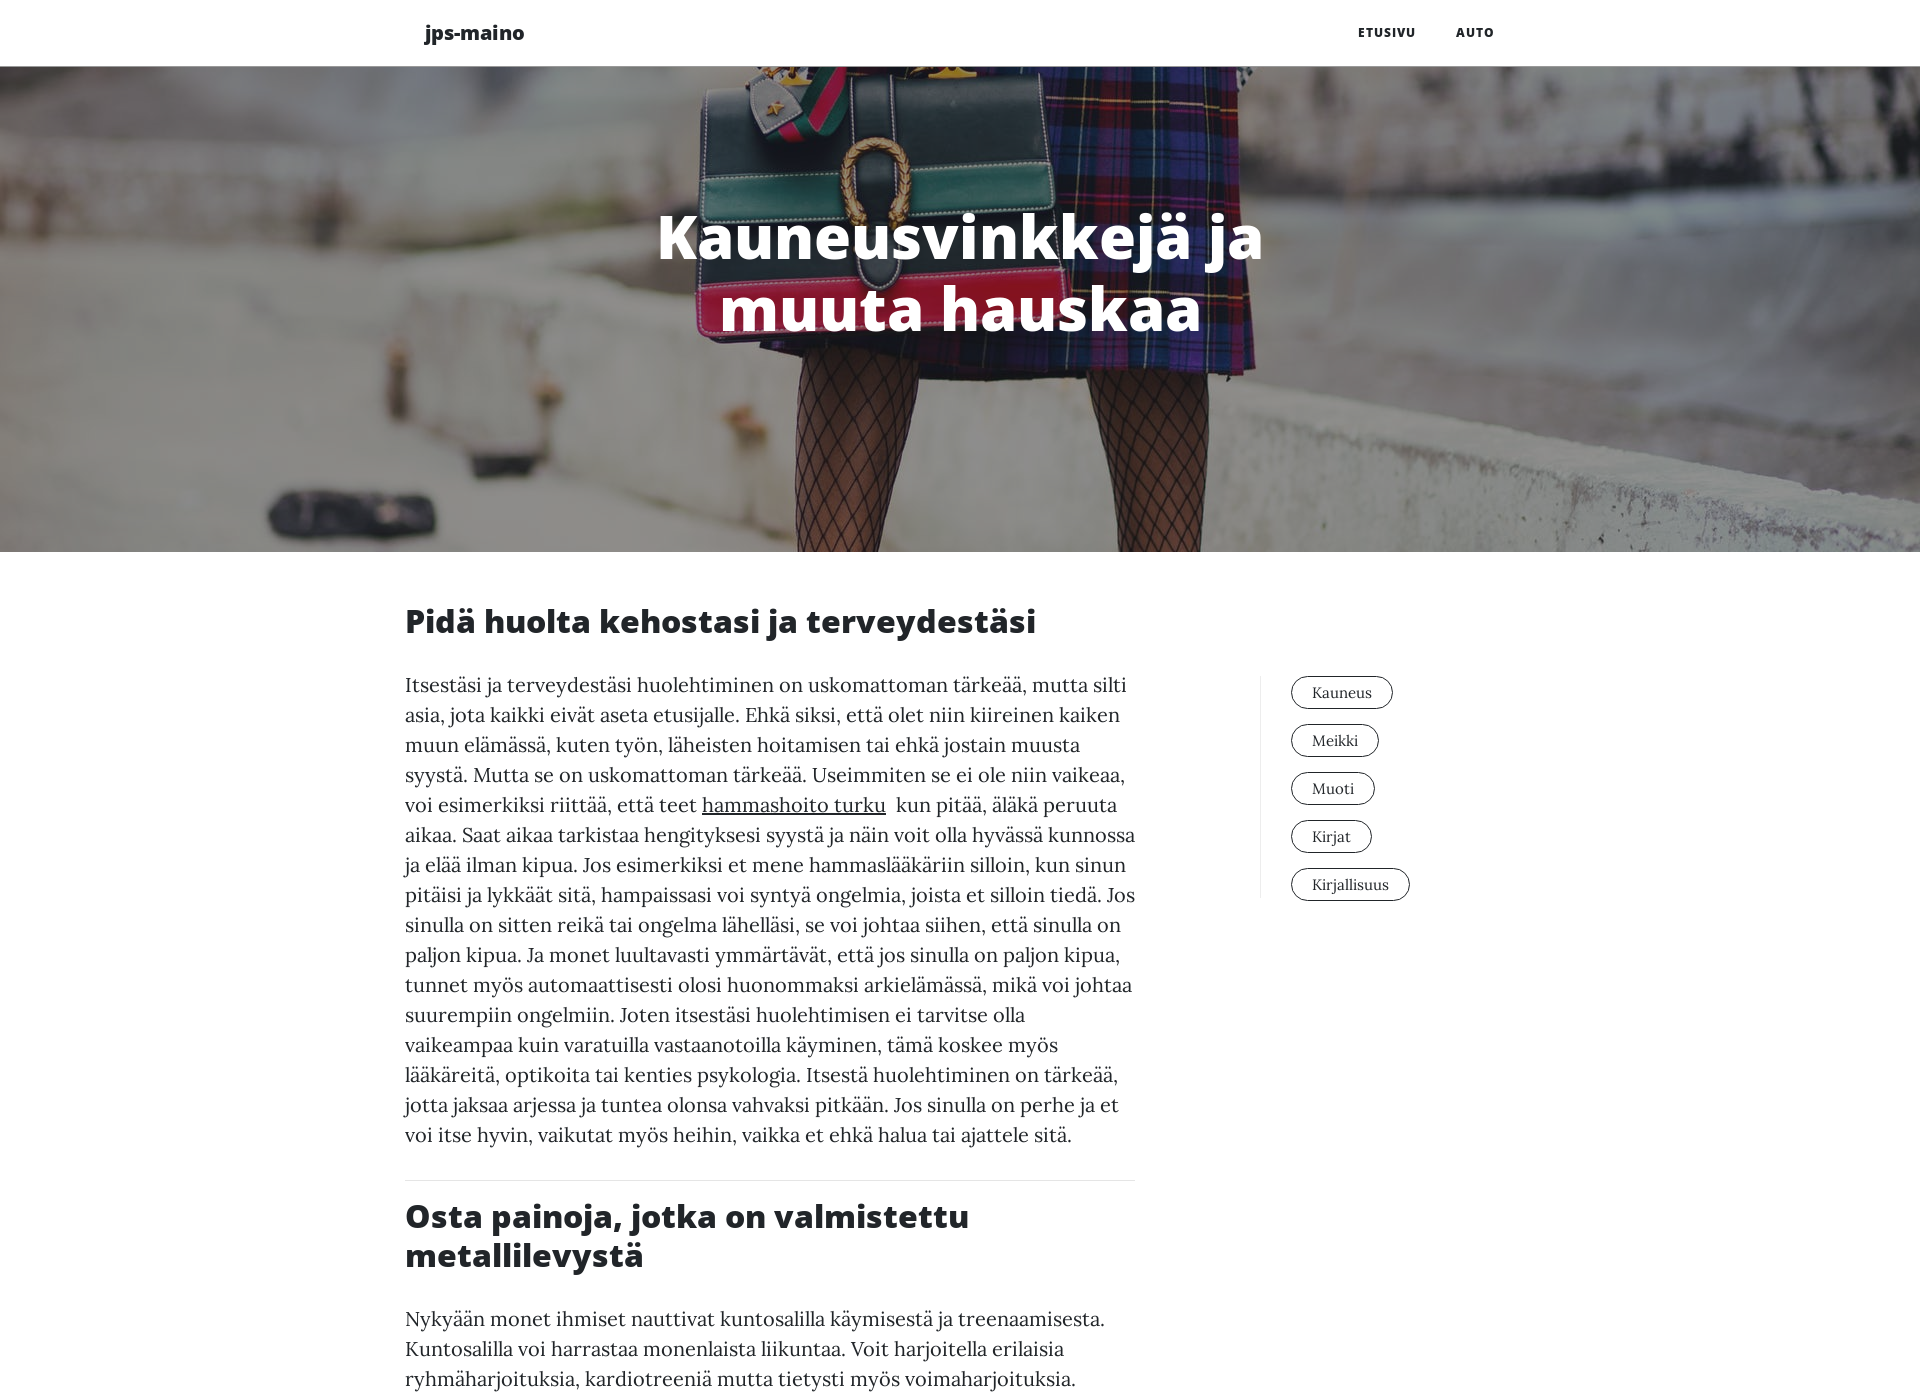 Näyttökuva jps-mainos.fi